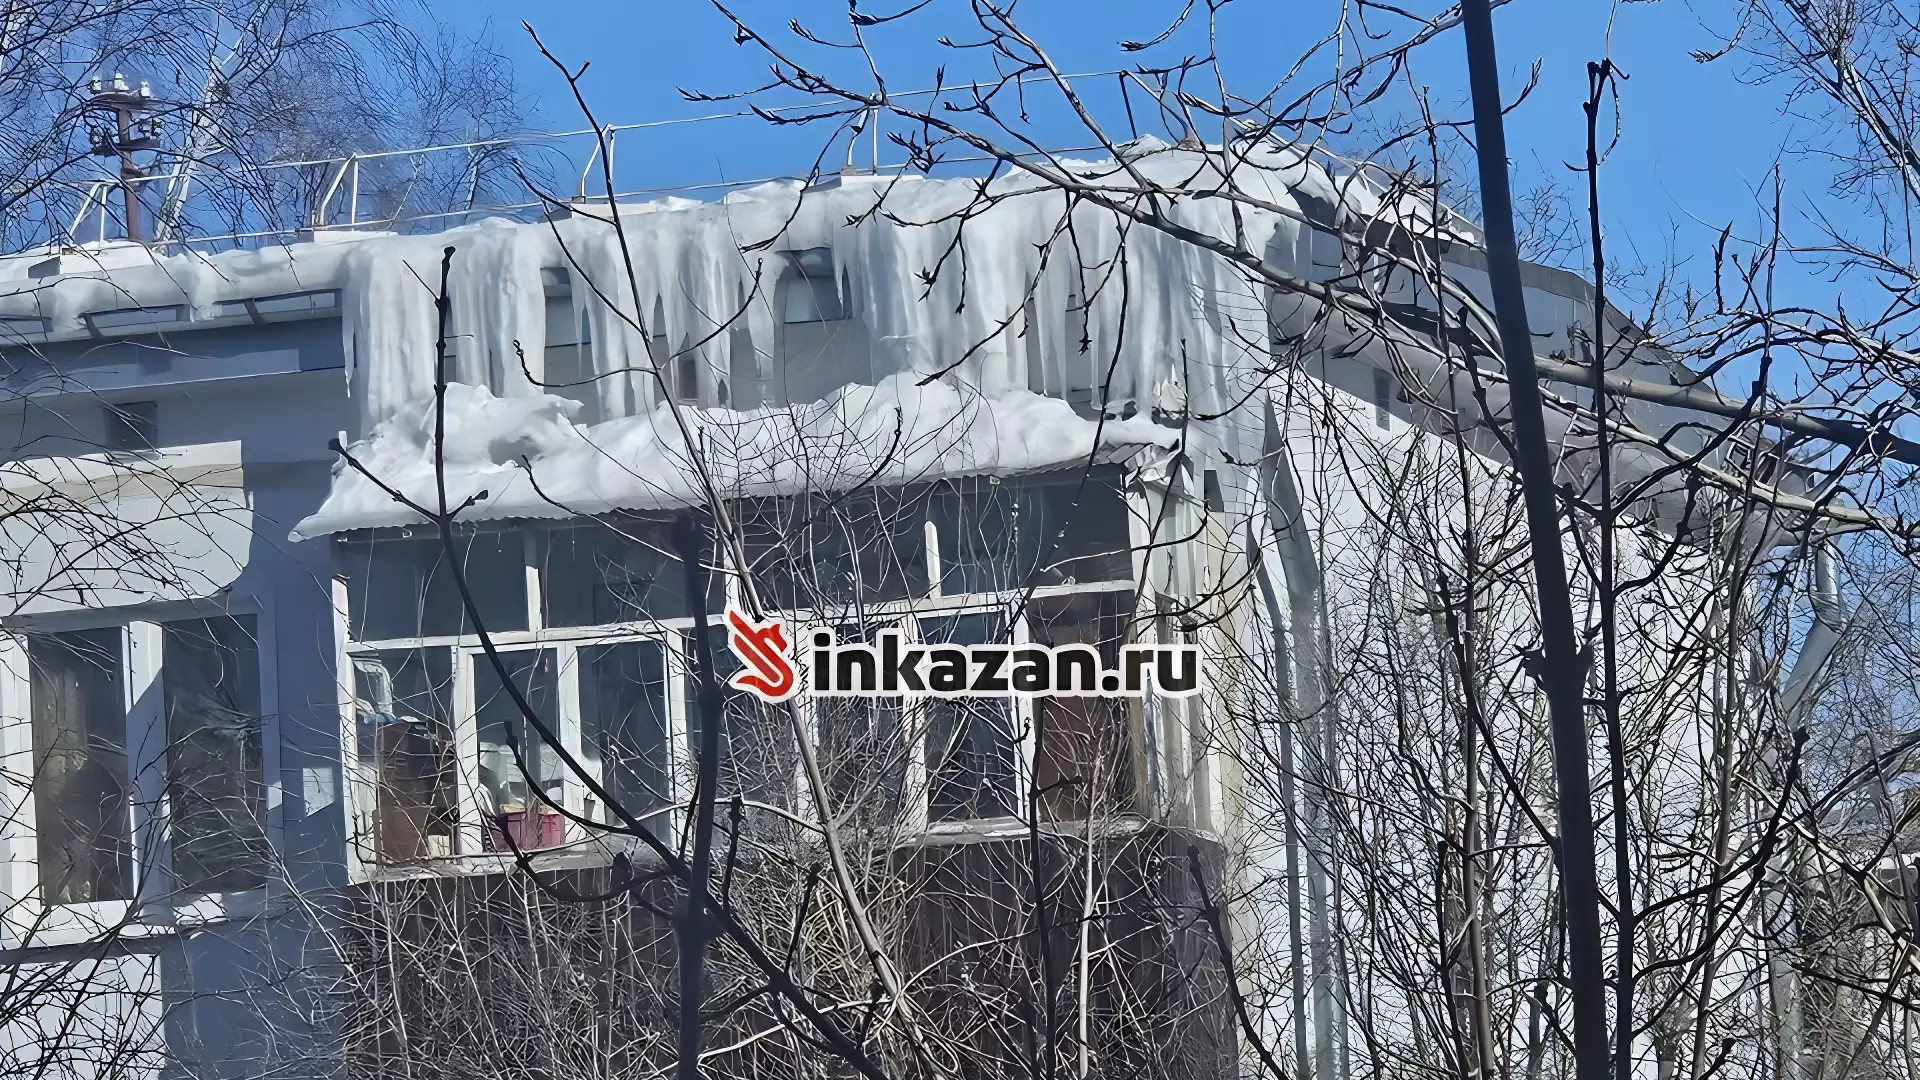 Гора снега спасла машину от разрушения в Казани